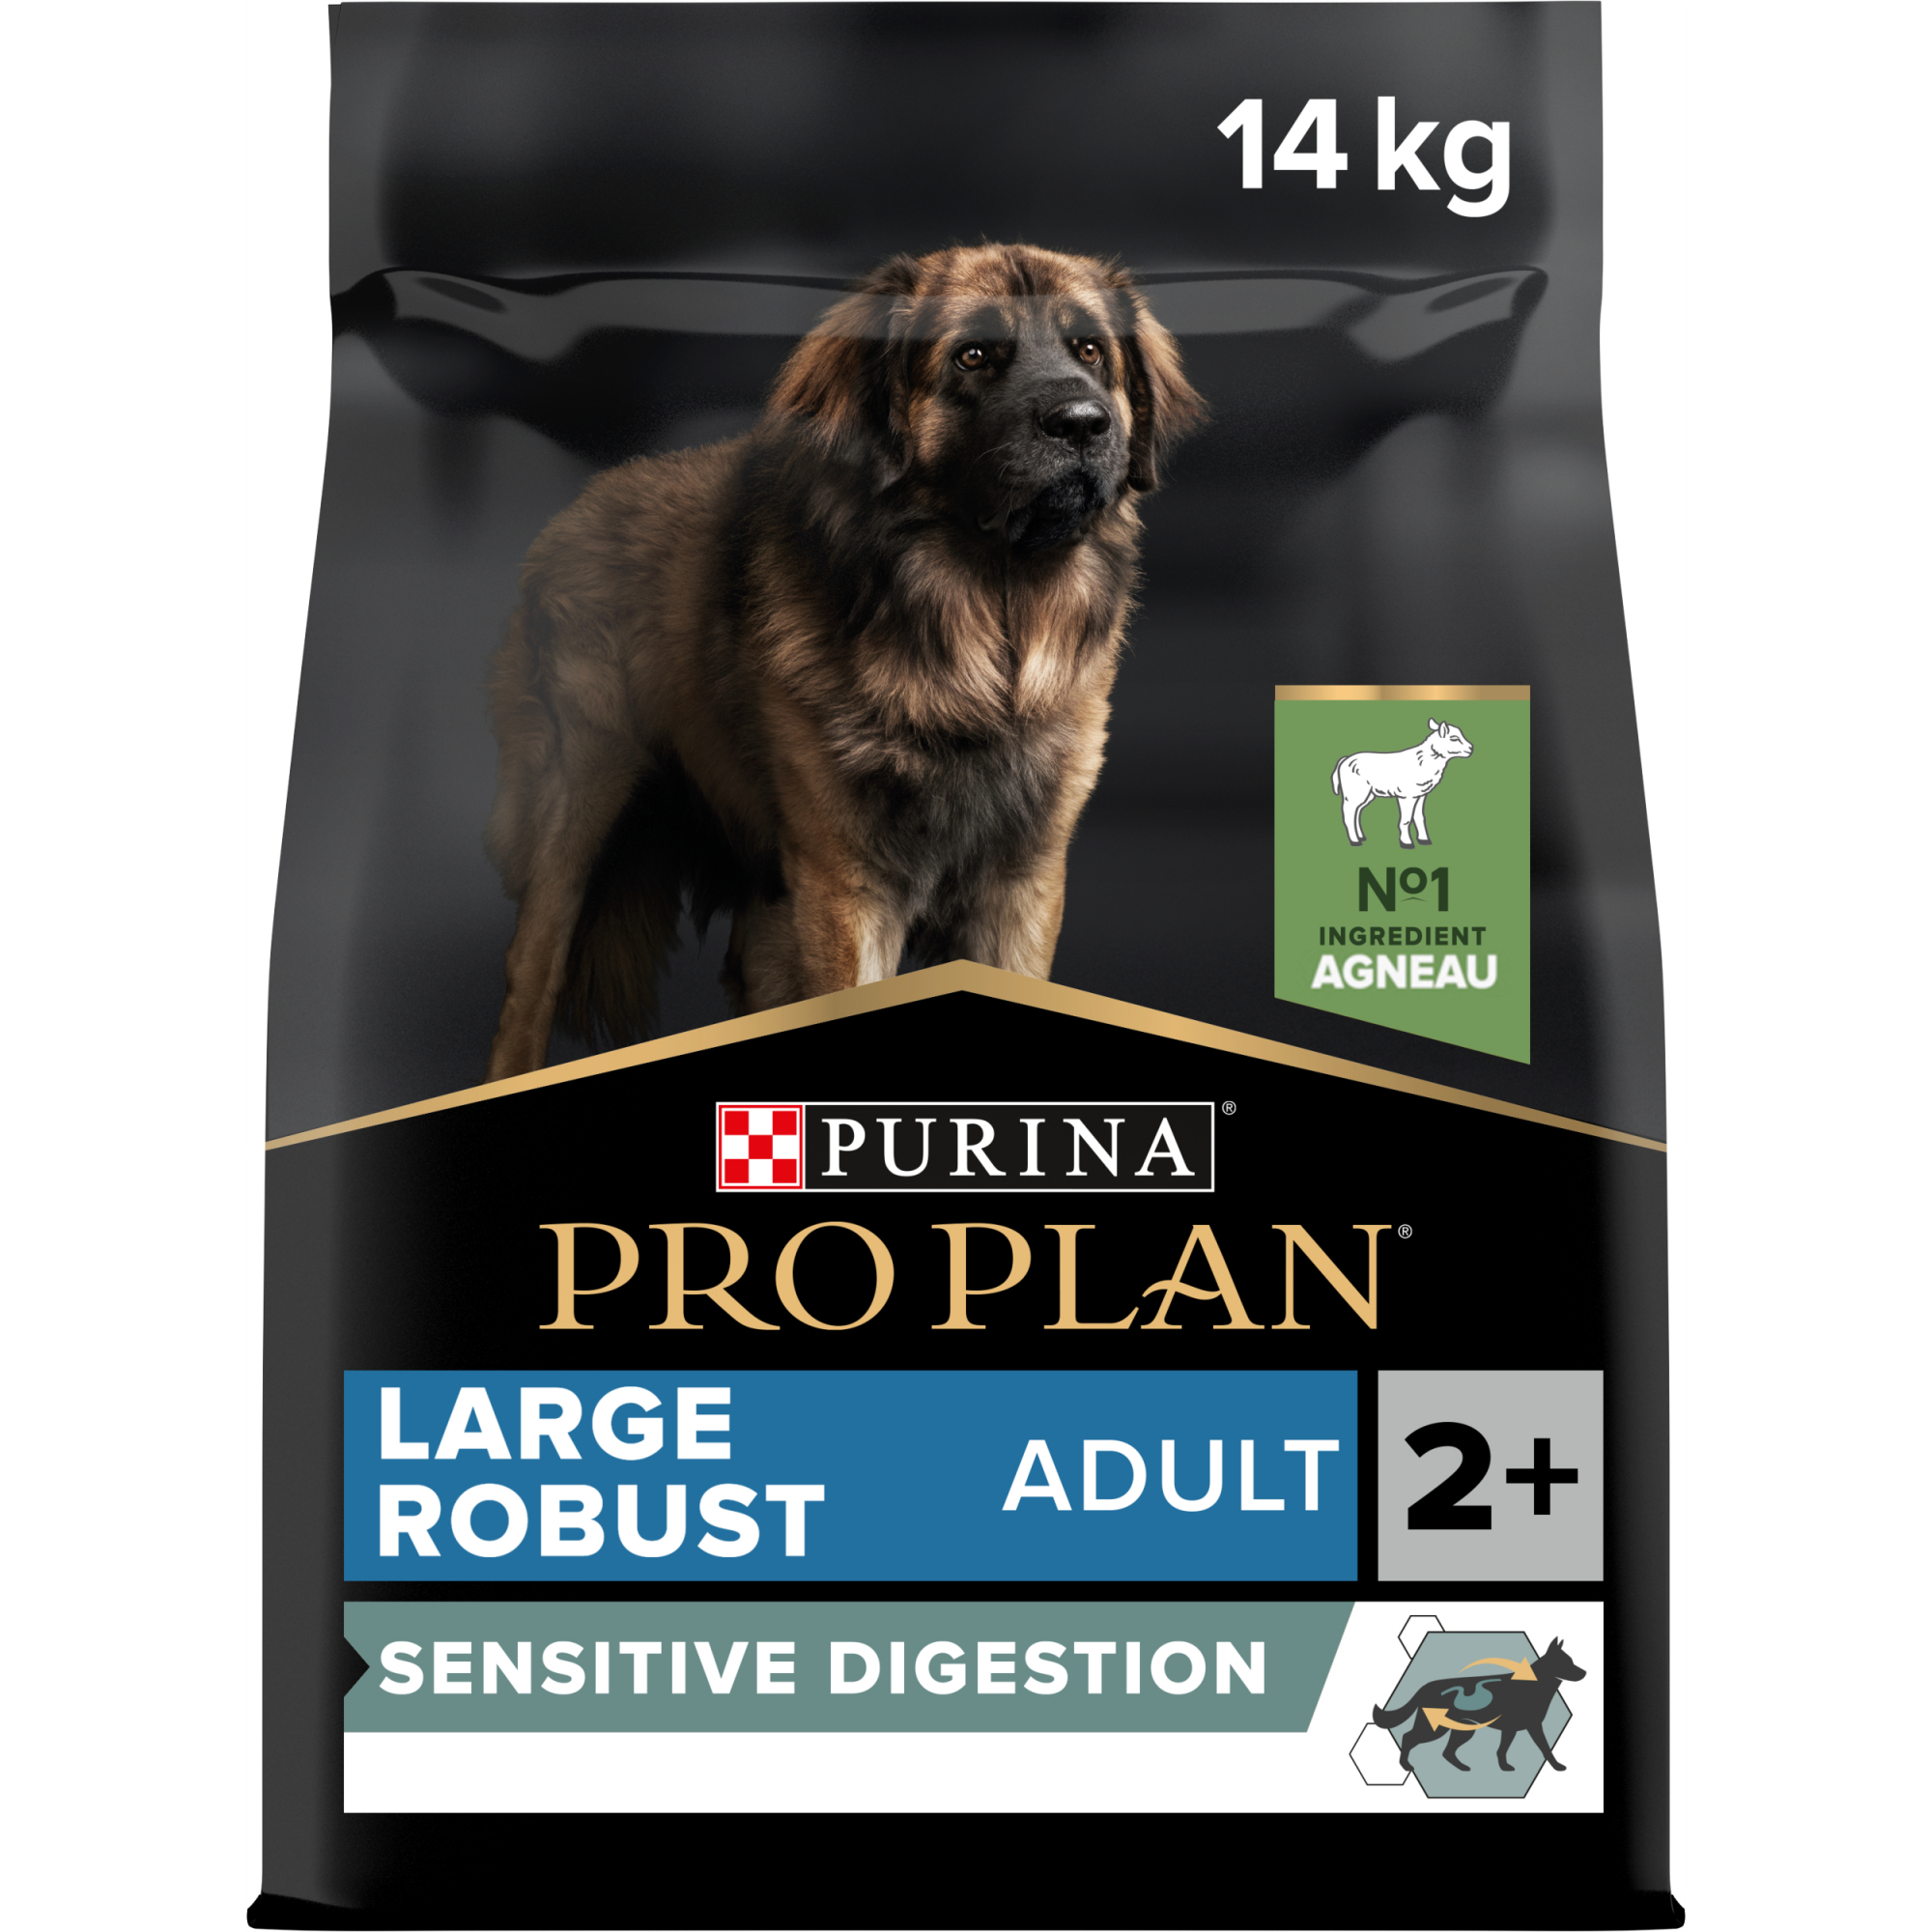 PRO PLAN Large Adult Robust Sensitive Digestion für Hunde